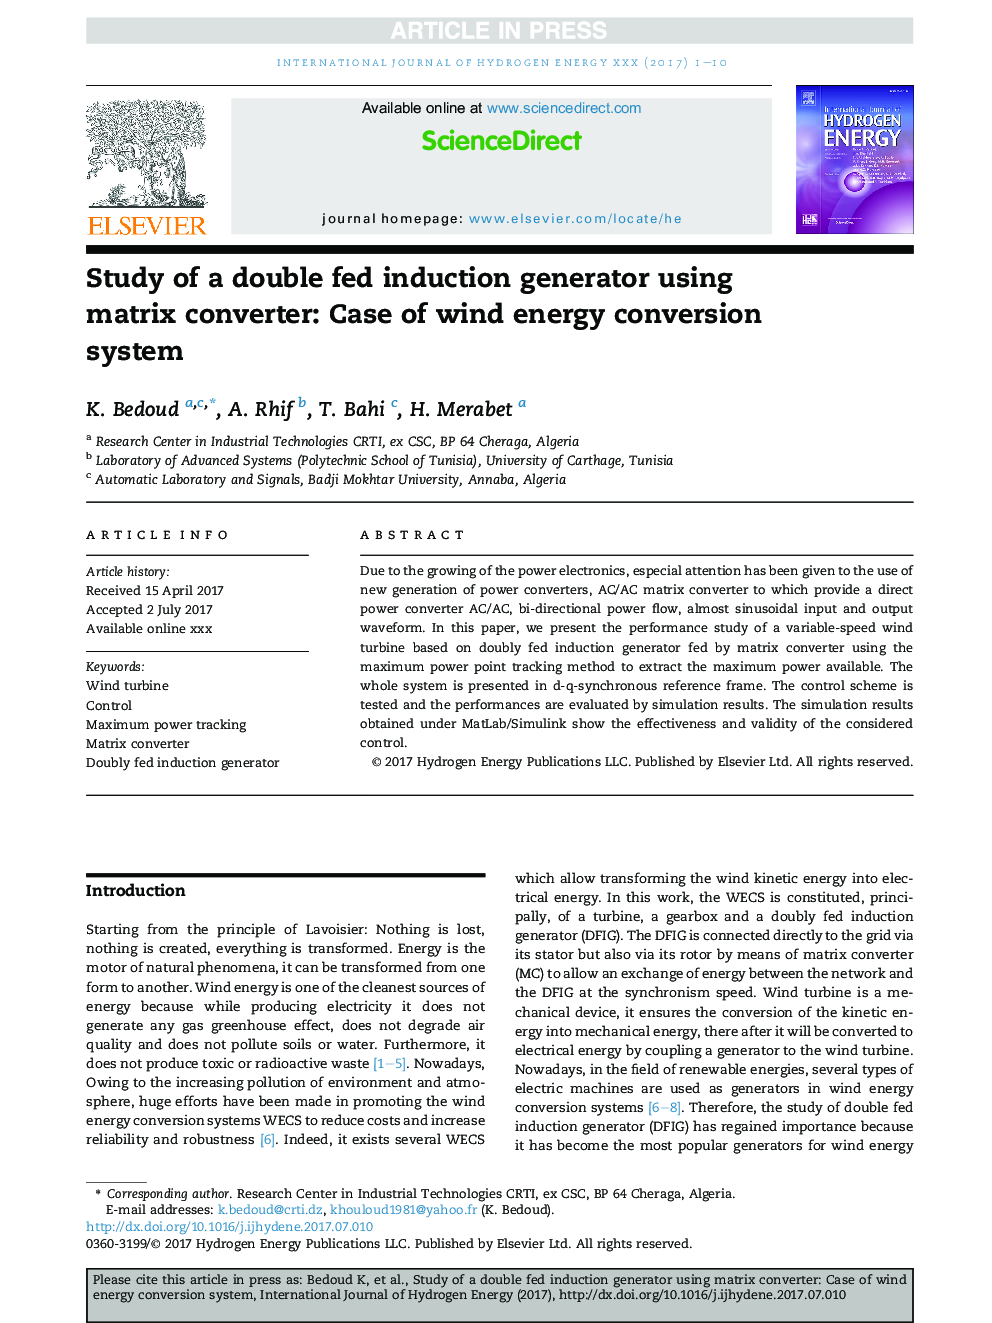 بررسی یک ژنراتور القایی با استفاده از ماتریس ماتریس: مورد استفاده از سیستم تبدیل انرژی باد 